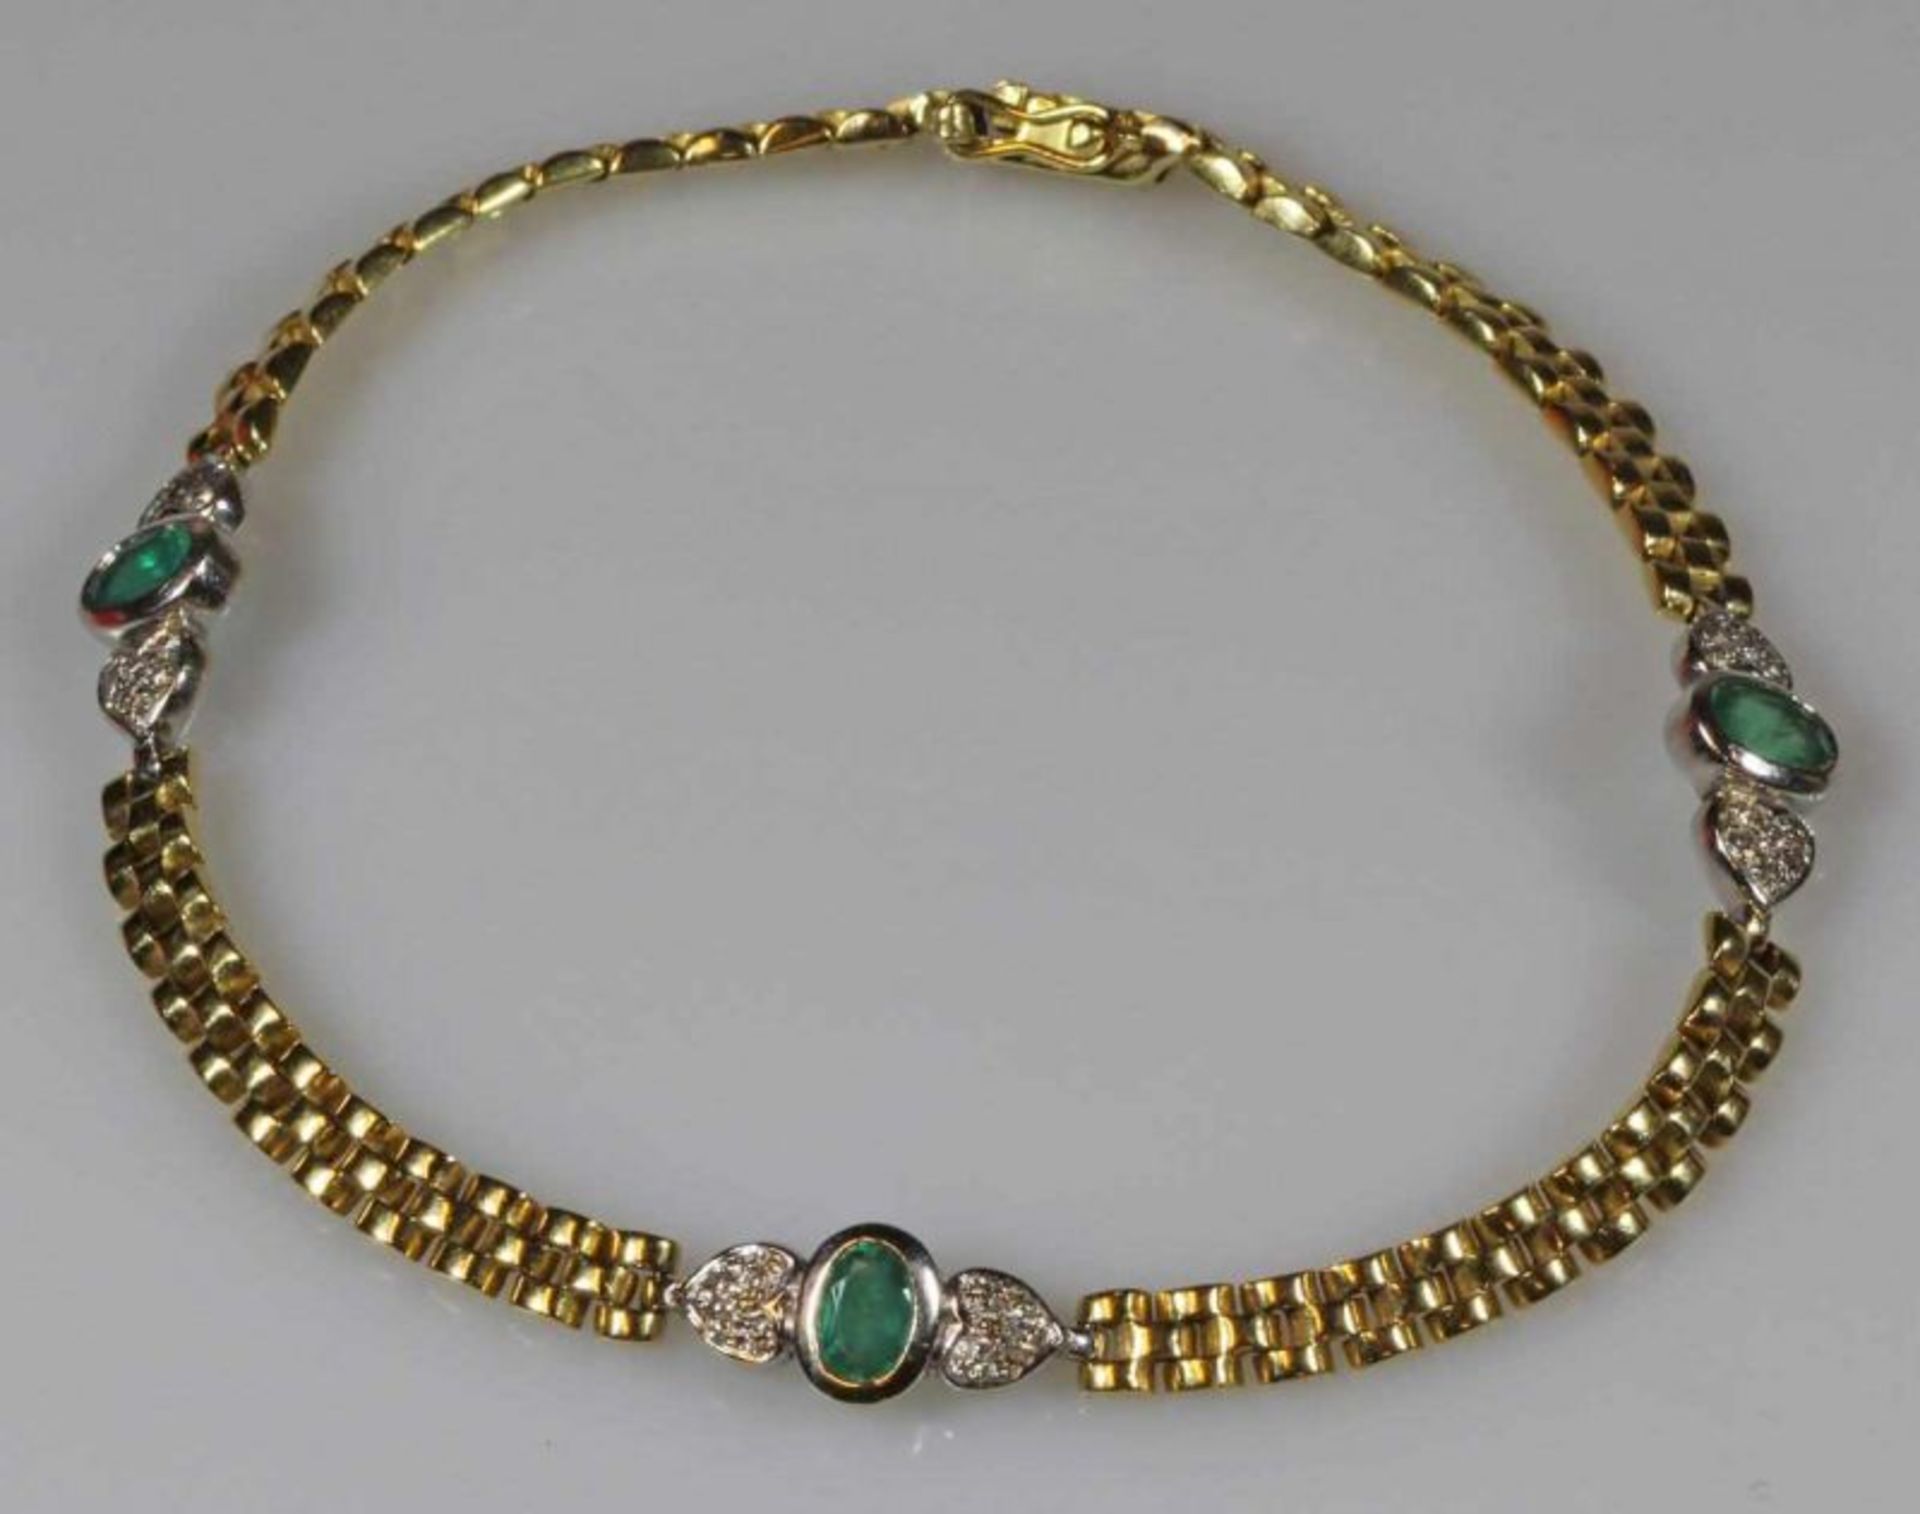 Armband, WG/GG 750, 3 oval faccettierte Smaragde, 6 kleine Herzelemente mit Brillantbesatz, 21 cm,